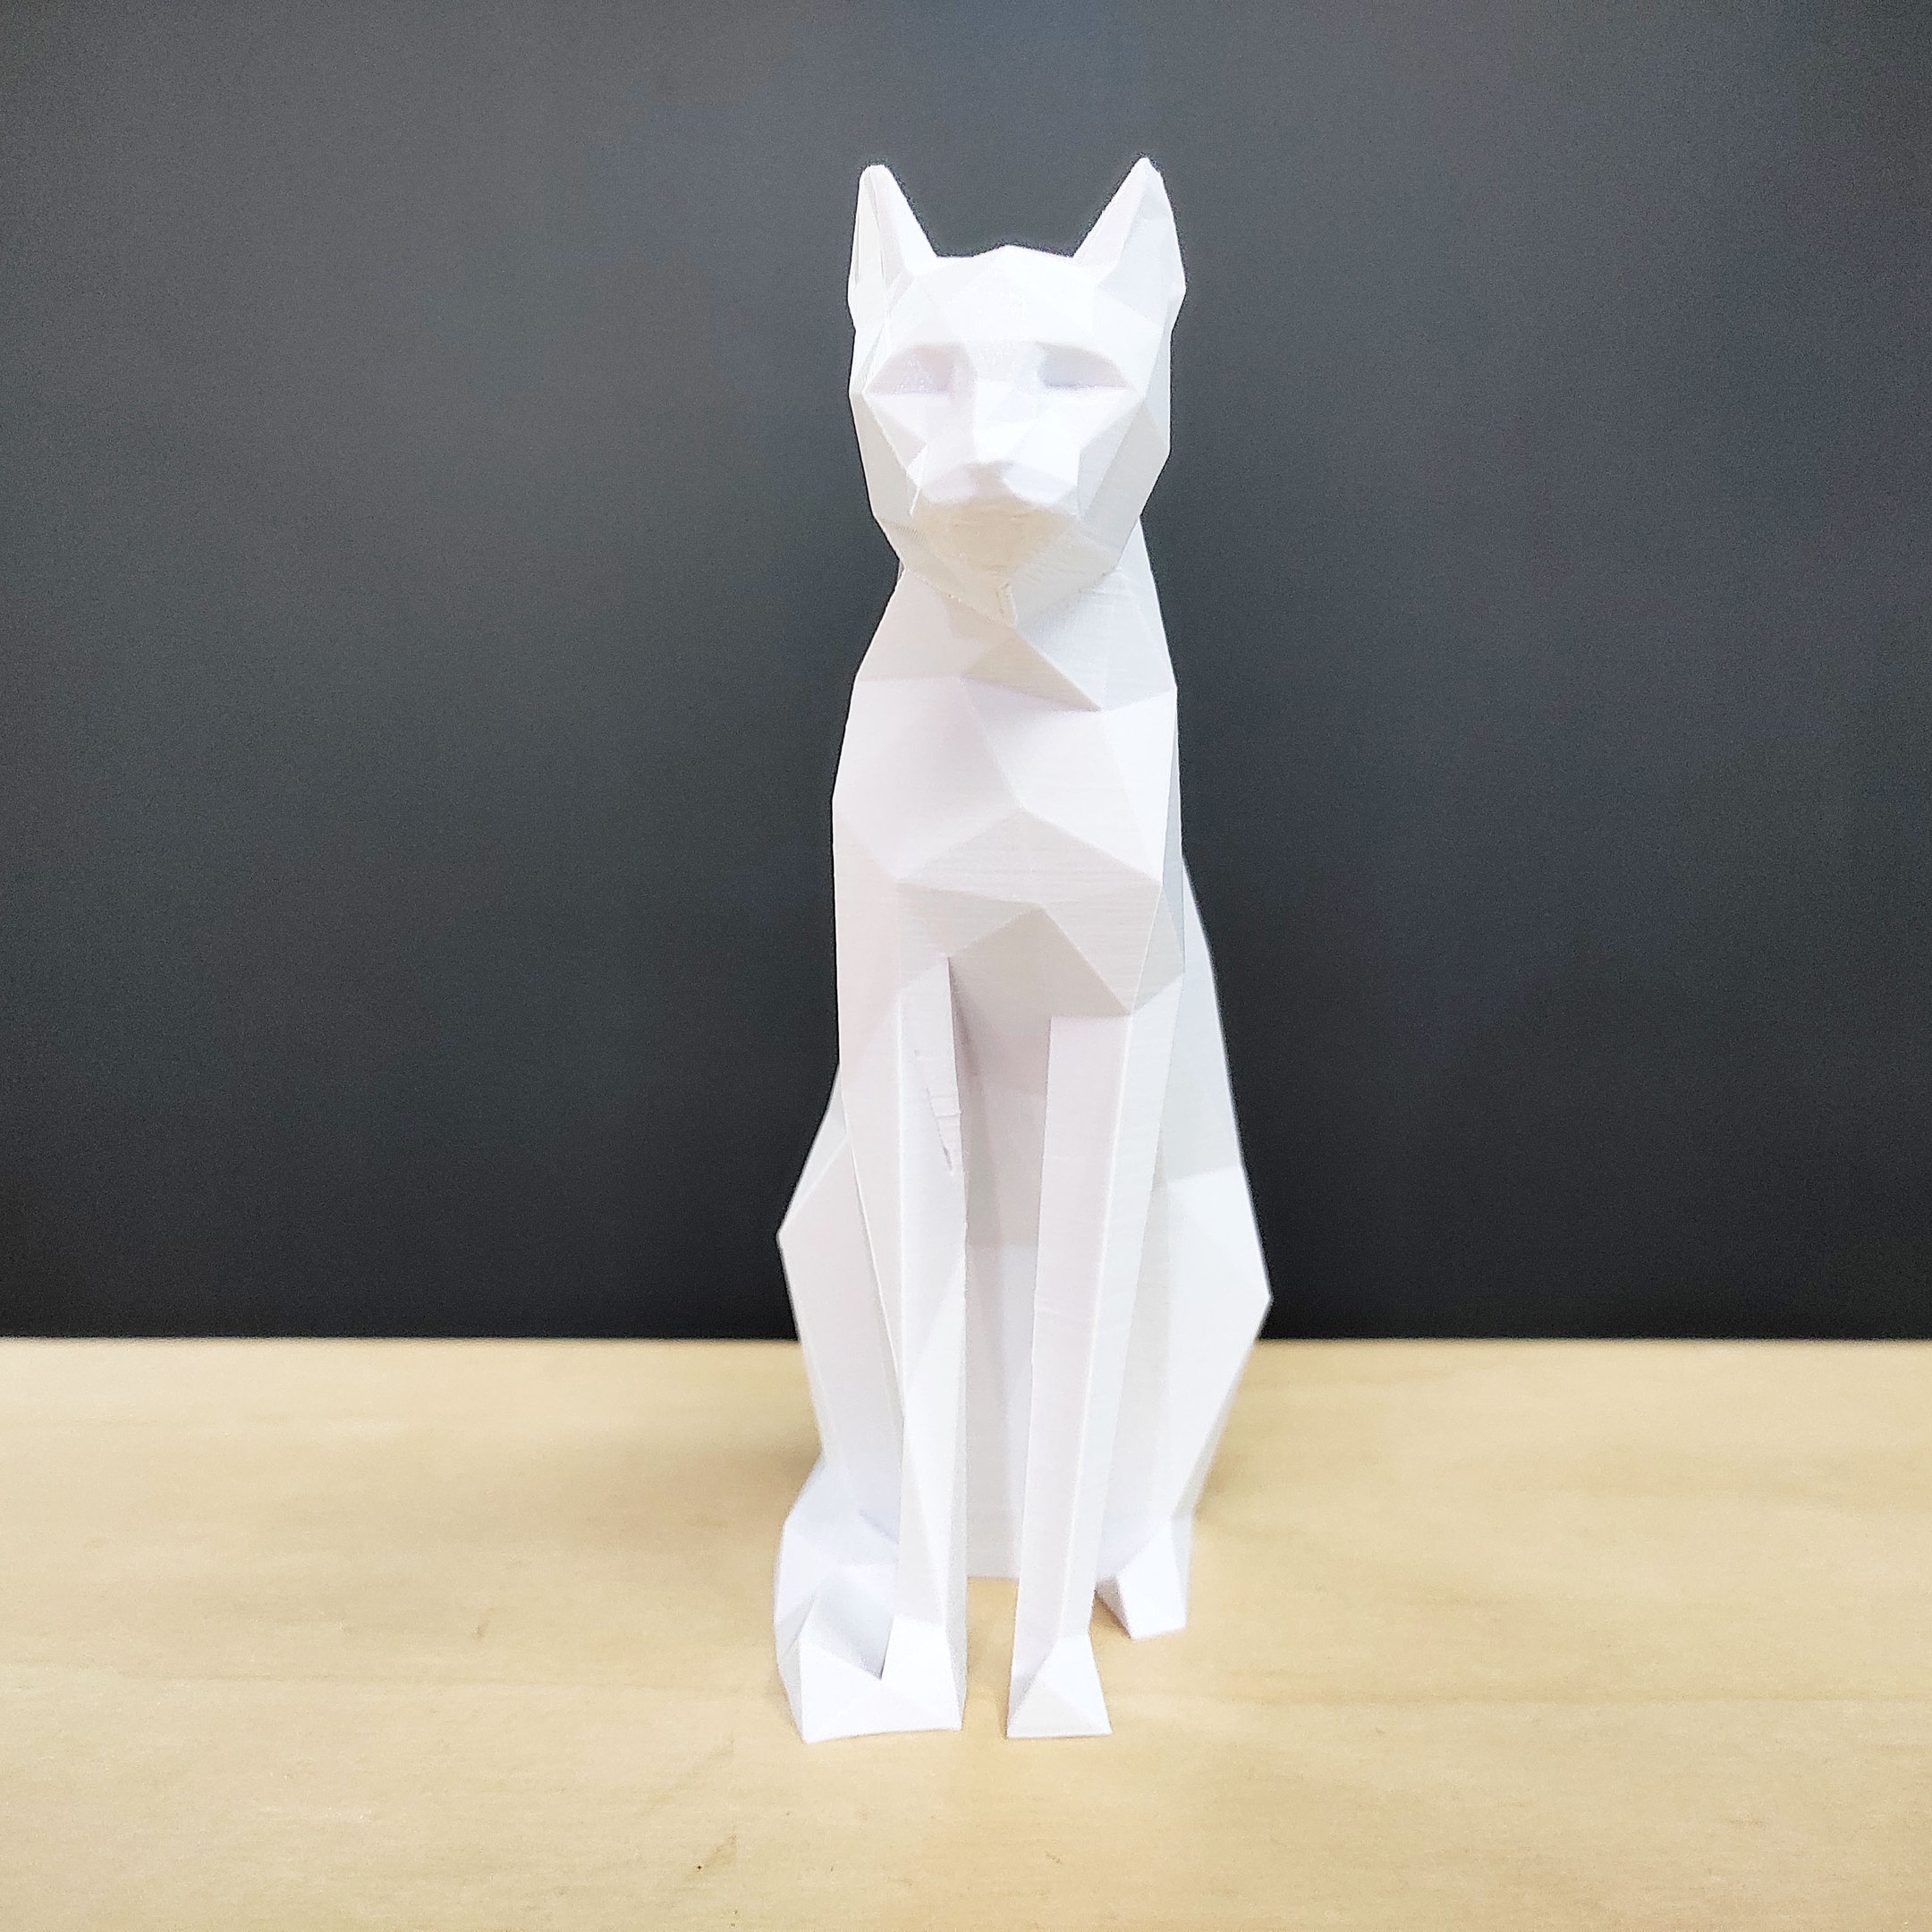 Gato Sentado 15 Cm - Decoração, Estatueta, Egipcio - Toque 3D:Branco - 2